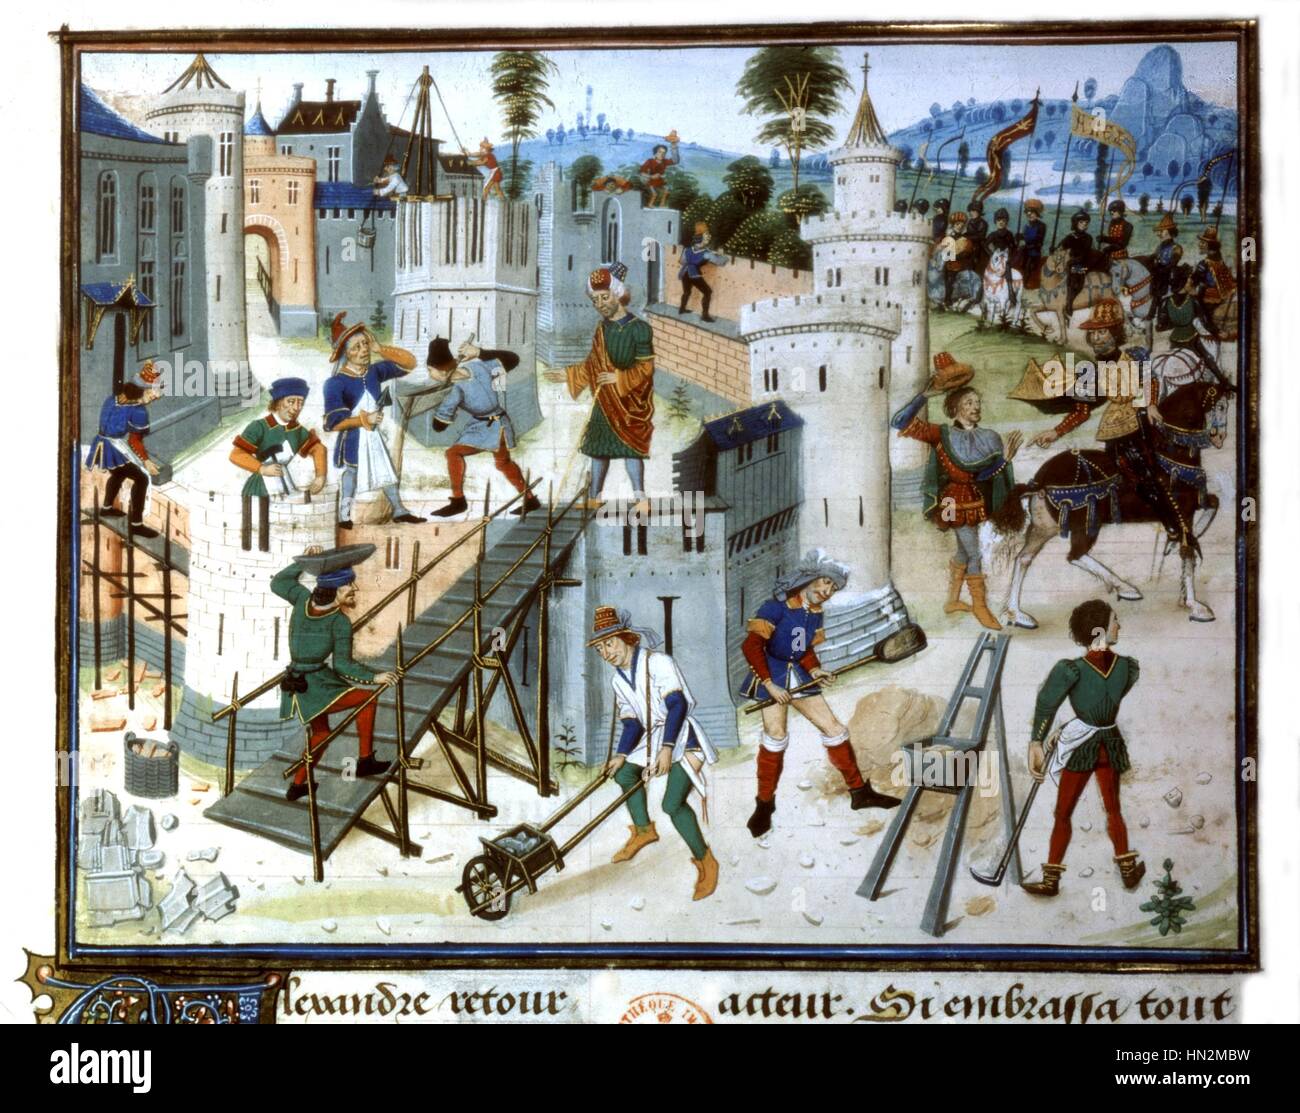 Miniatur von Louis Liedet "The History of the Great Alexander" von Quinte Curce veranschaulichen. Die Erbauer Frankreich 15. Jahrhundert Stockfoto